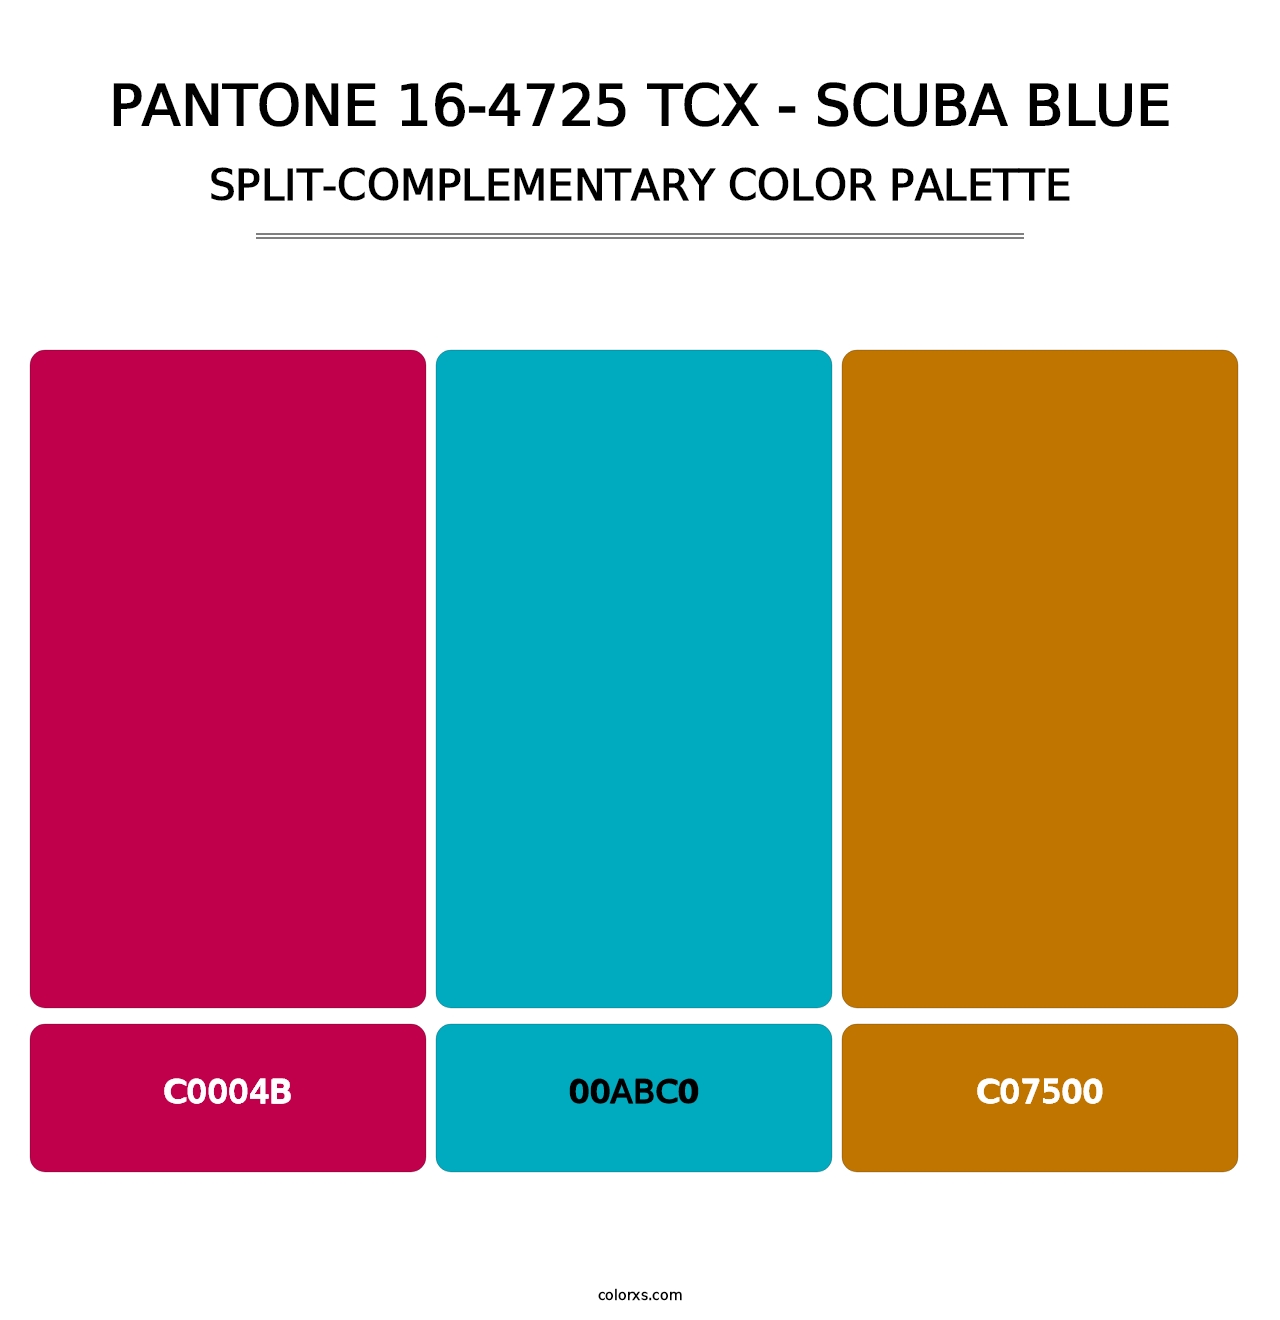 PANTONE 16-4725 TCX - Scuba Blue - Split-Complementary Color Palette